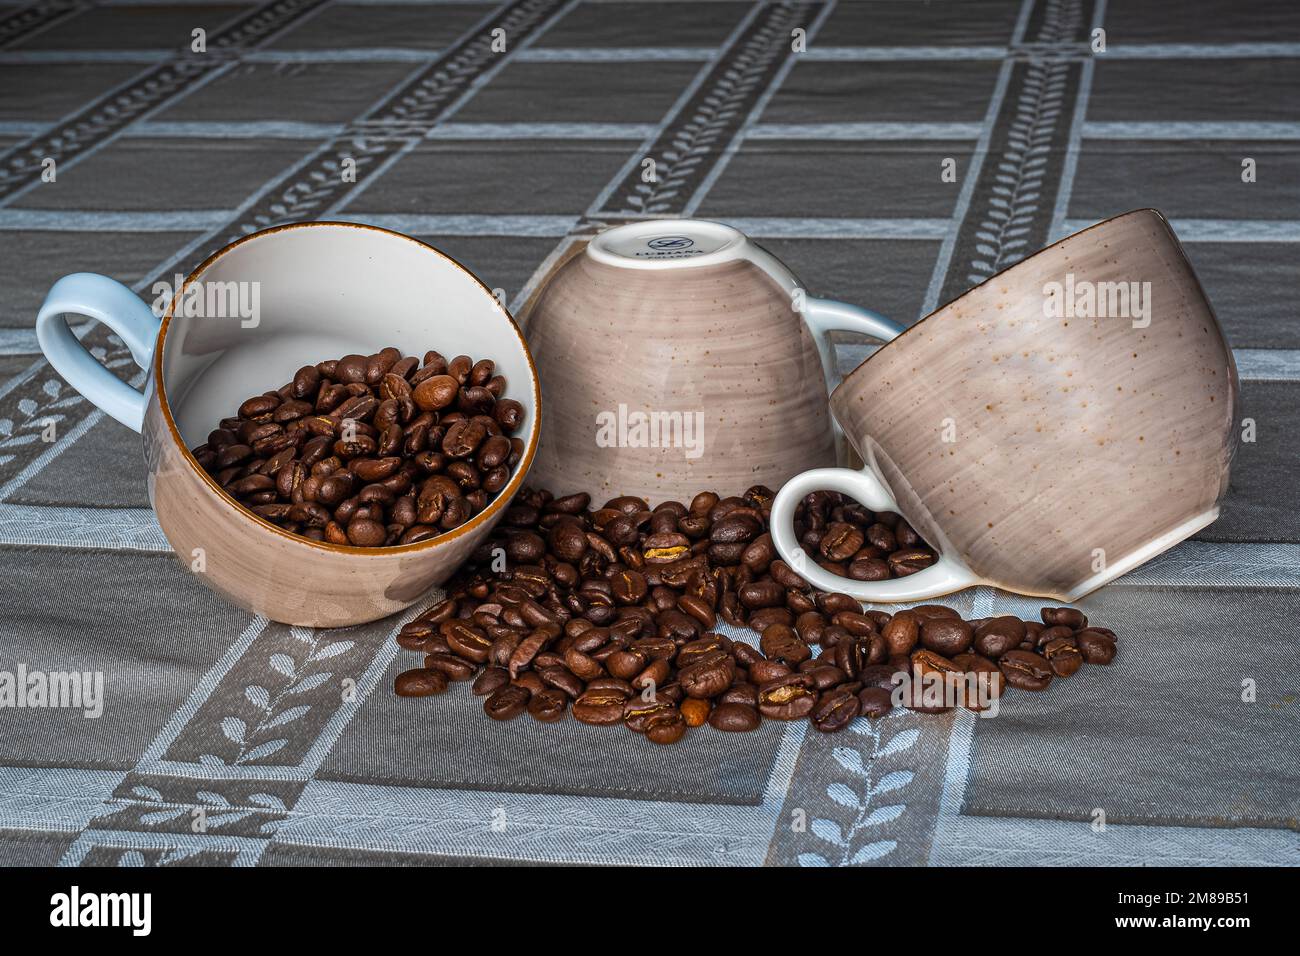 Lubiana Polnisches Porzellan, Kaffeetasse. Sehr leichte und zarte Kaffeetasse auf dem Tisch gefüllt mit aromatischem arabischem Kaffee. Kann in der Werbung verwendet werden. Stockfoto